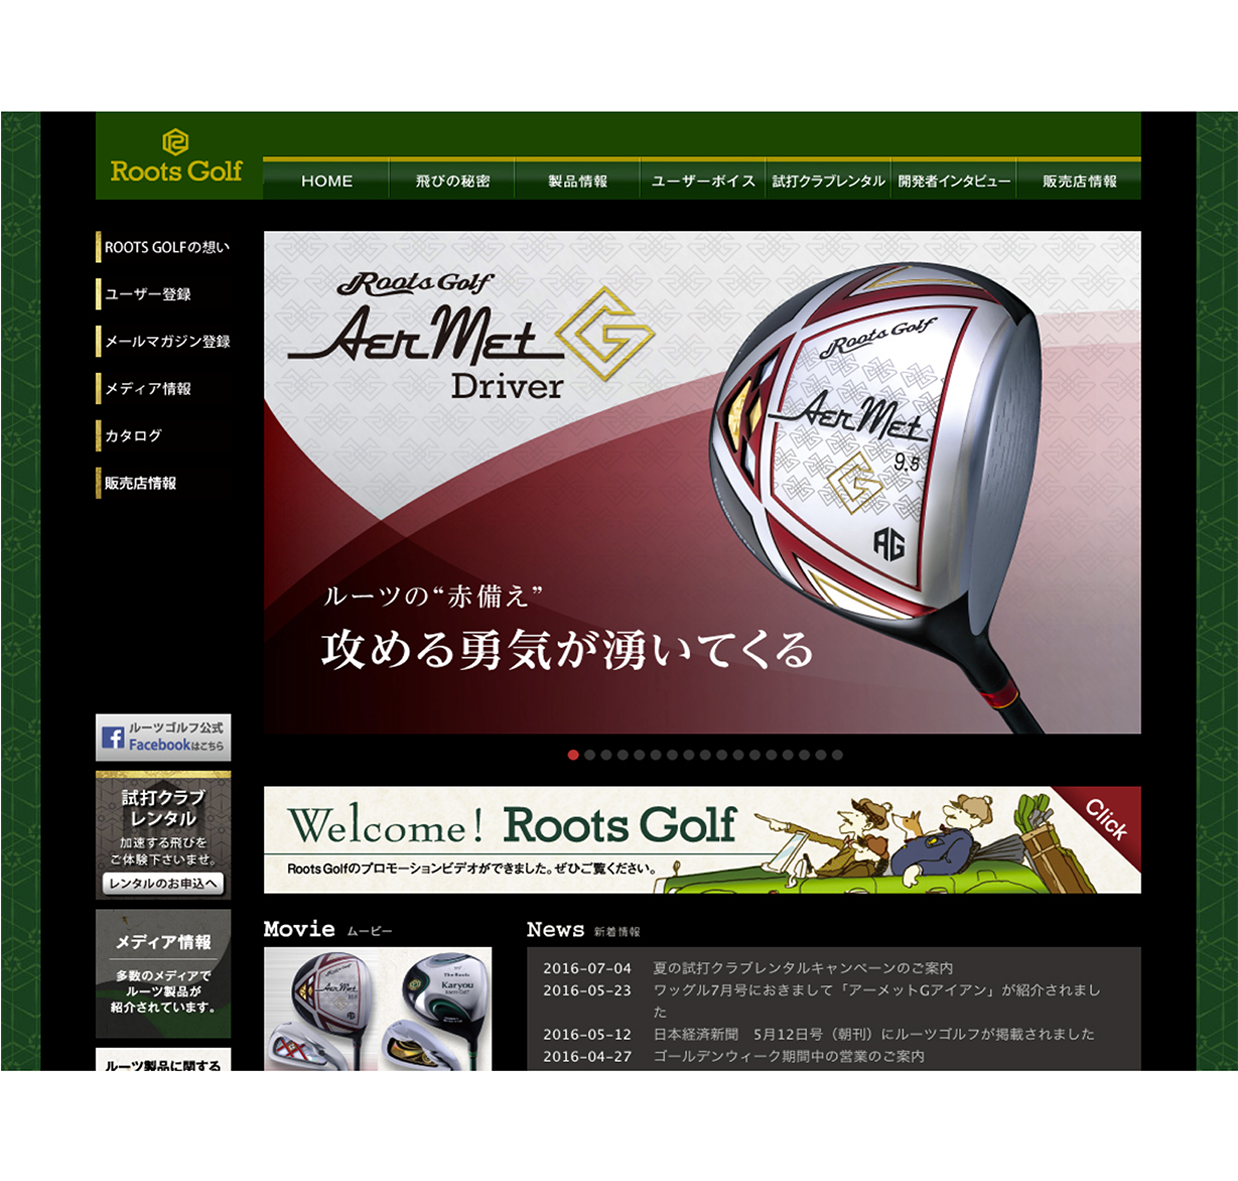 Roots Golf ホームページ